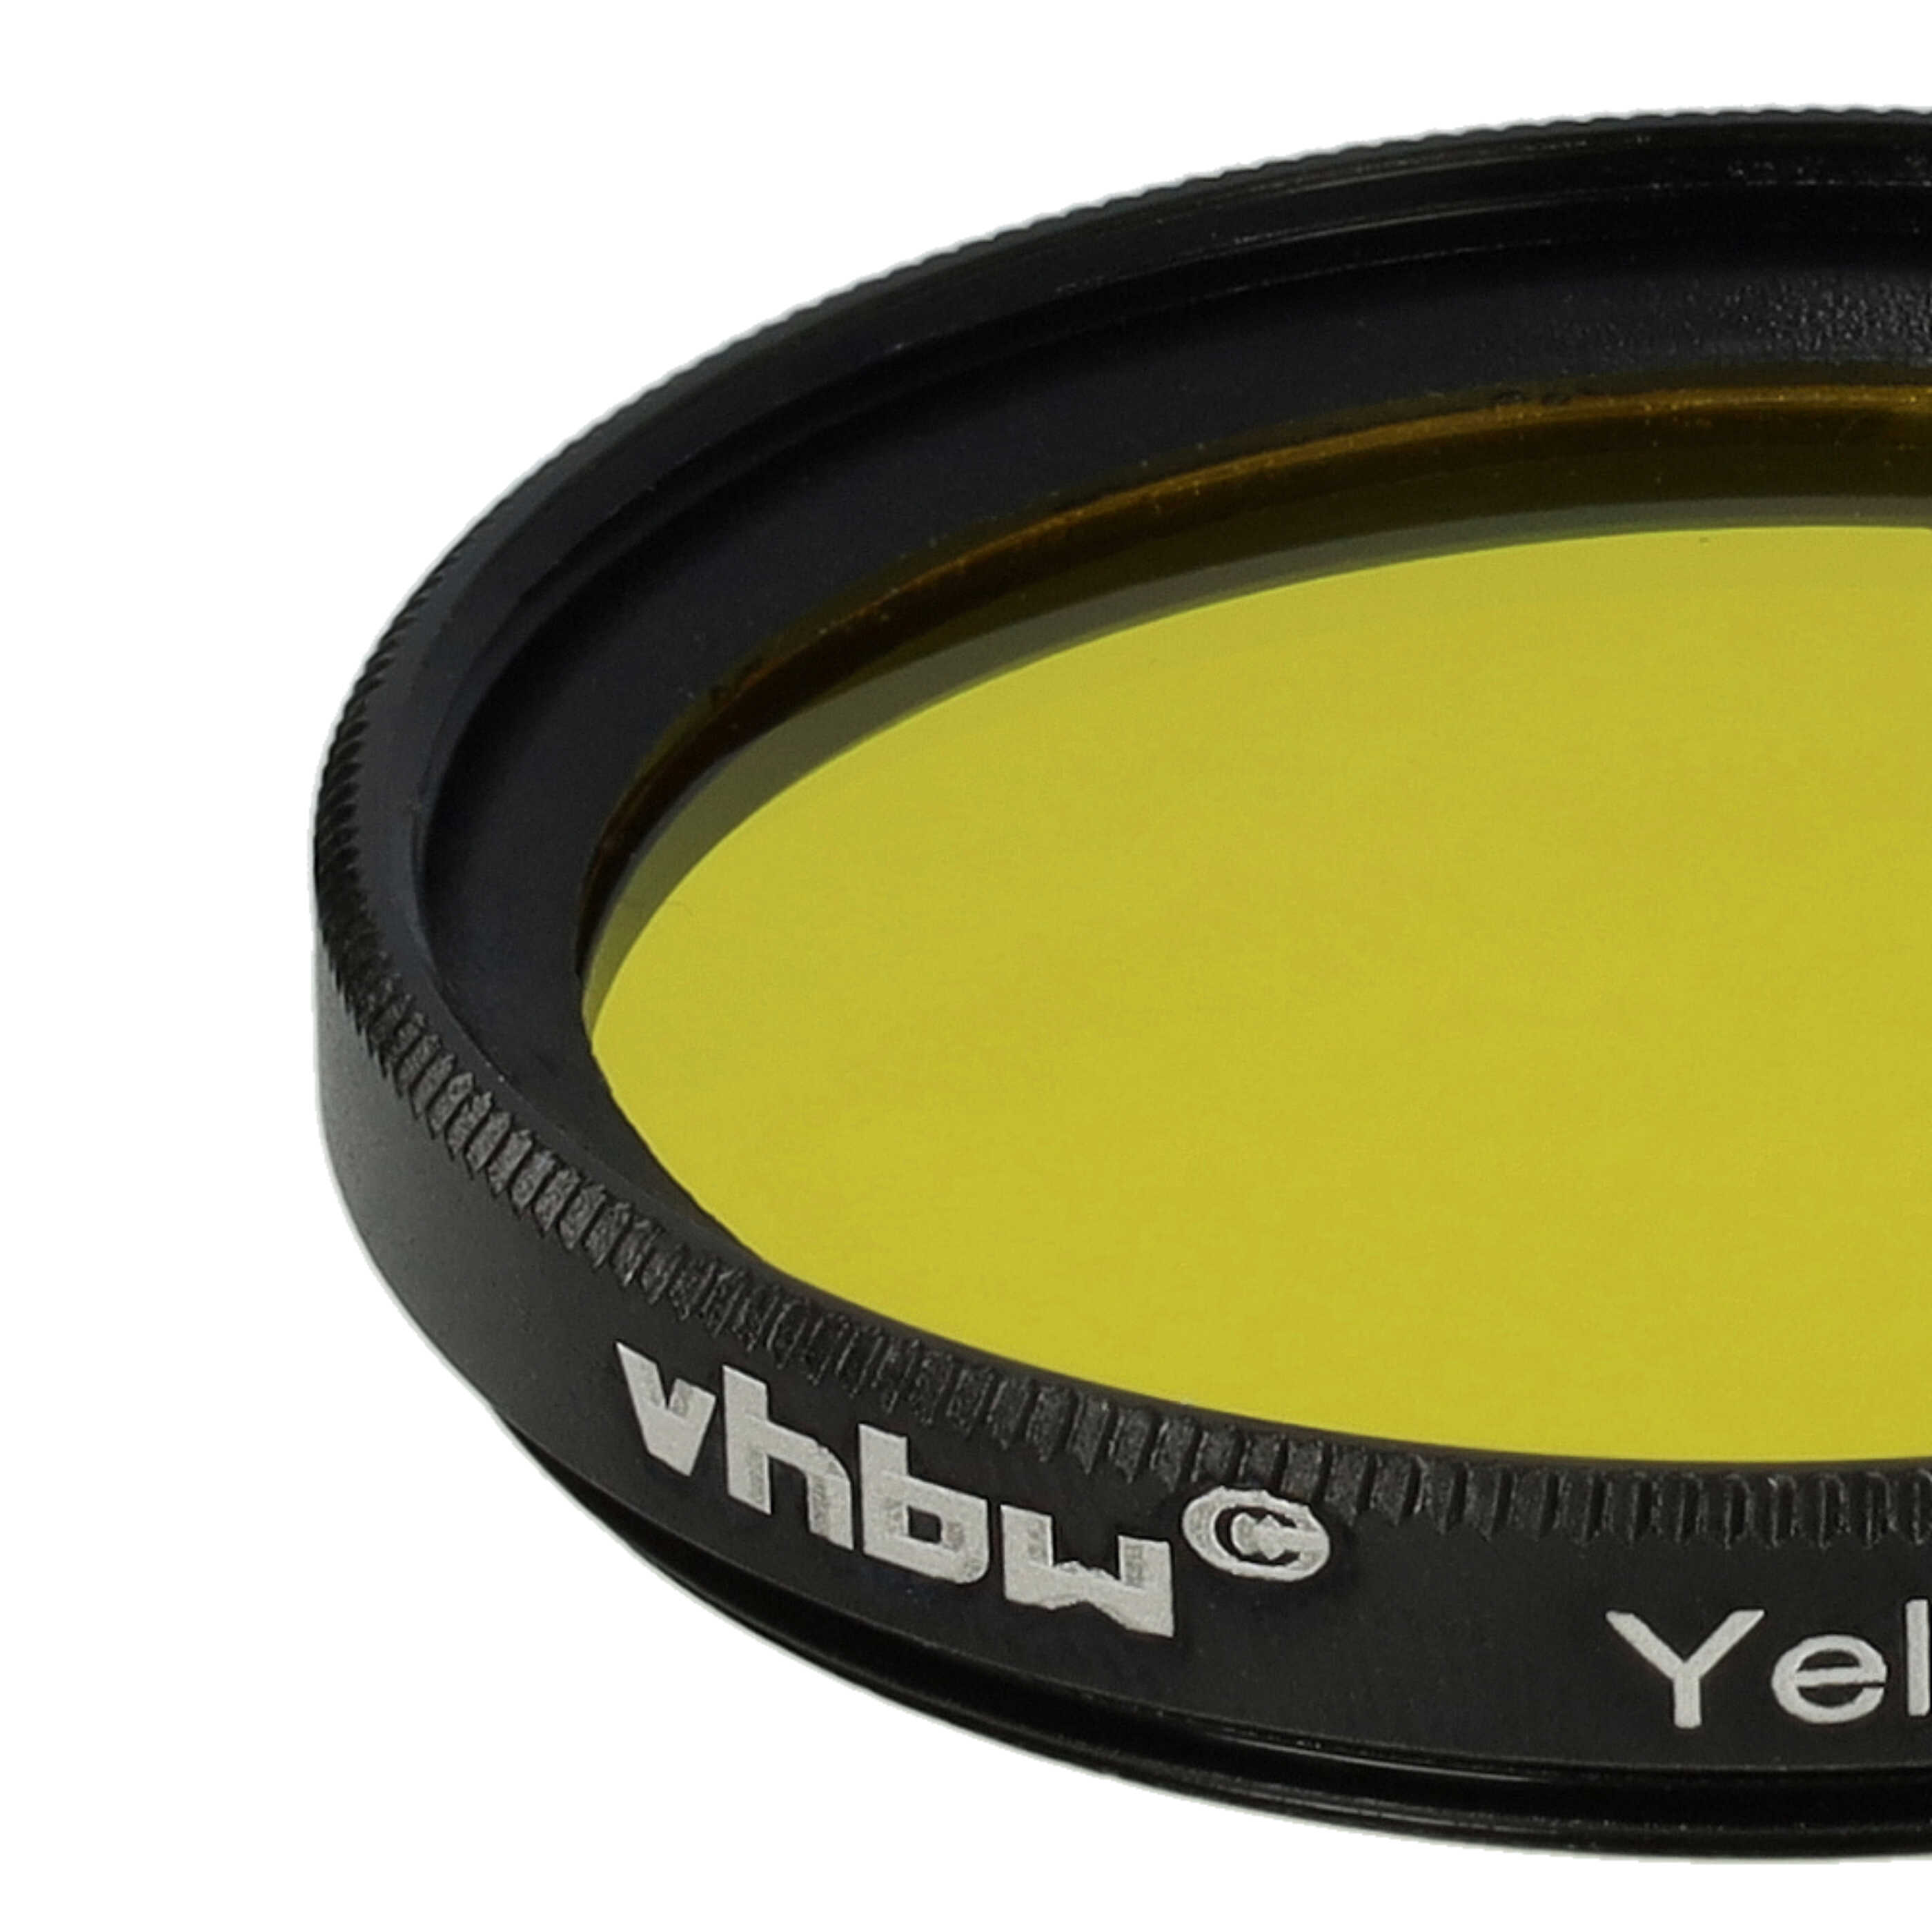 Filtr fotograficzny na obiektywy z gwintem 37 mm - filtr żółty